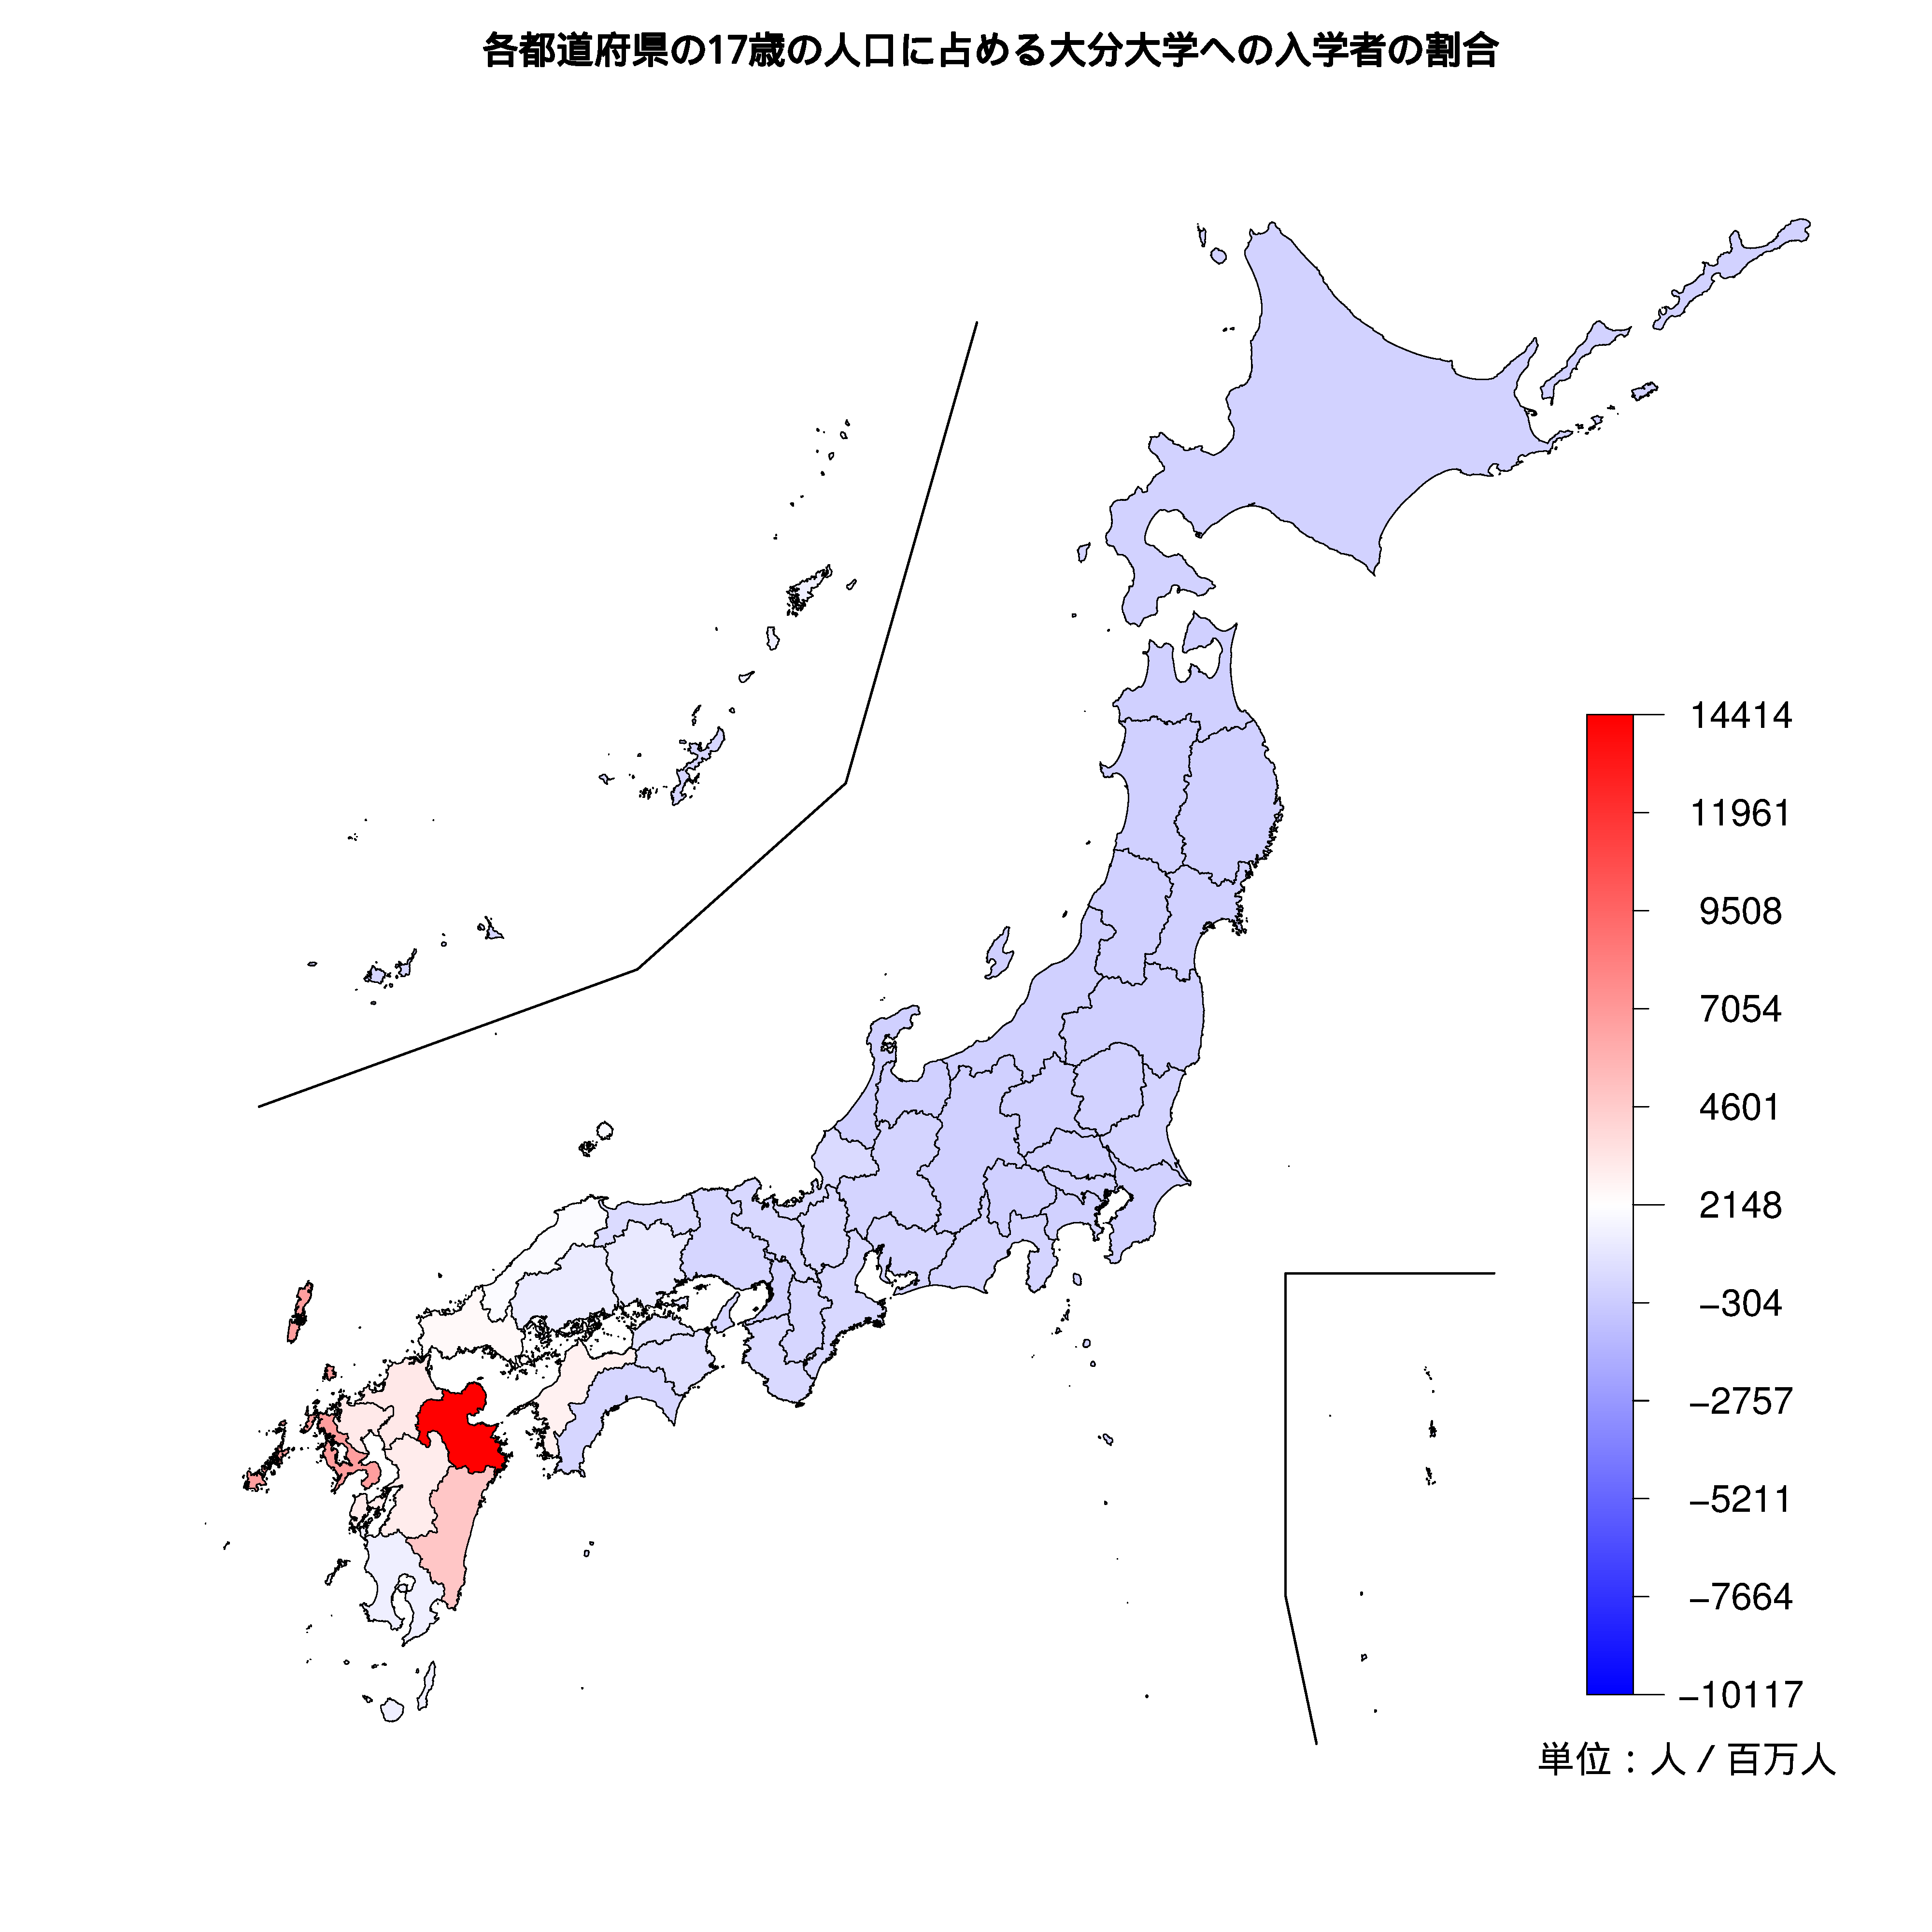 大分大学への入学者が多い都道府県の色分け地図